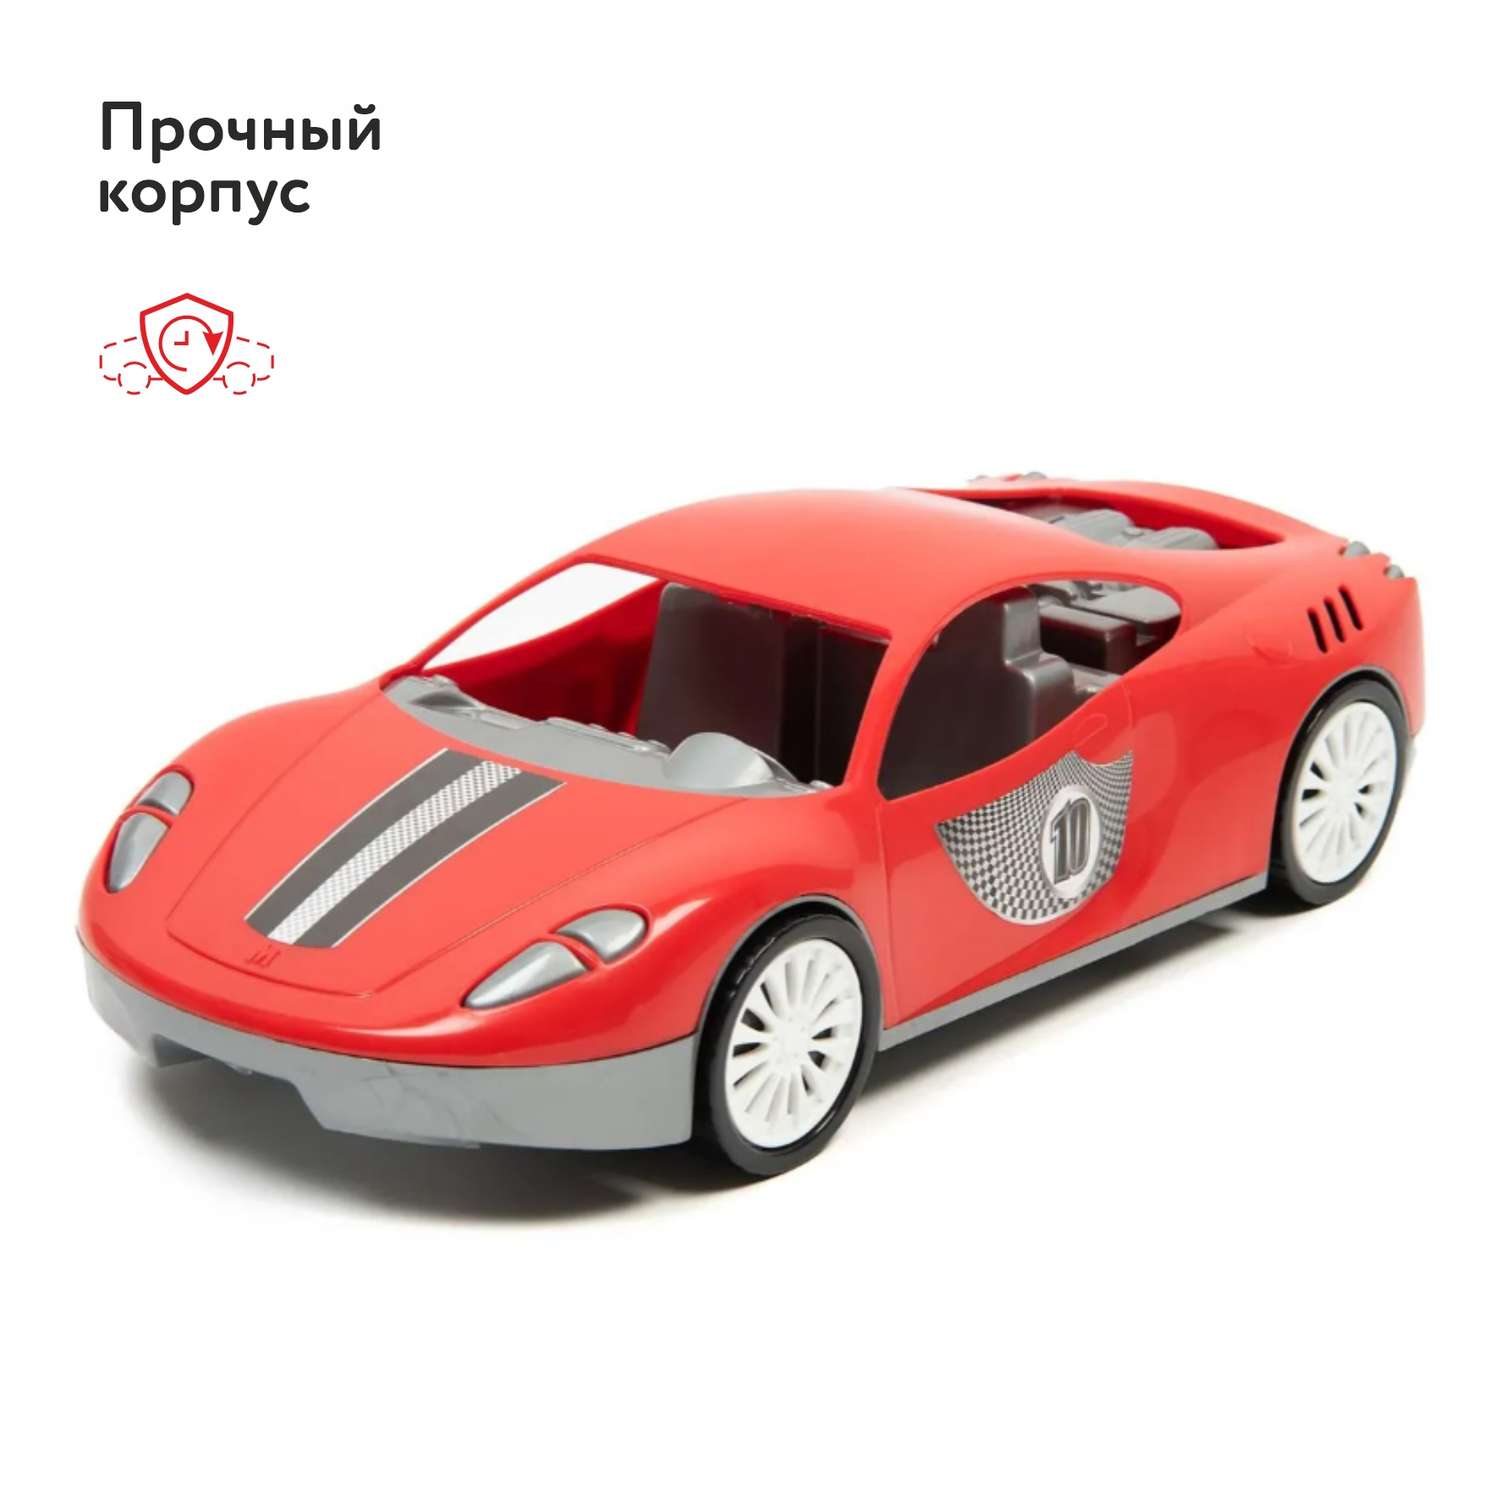 Автомобиль Zebratoys Спортивный Красный 15-11160 15-11160 - фото 5